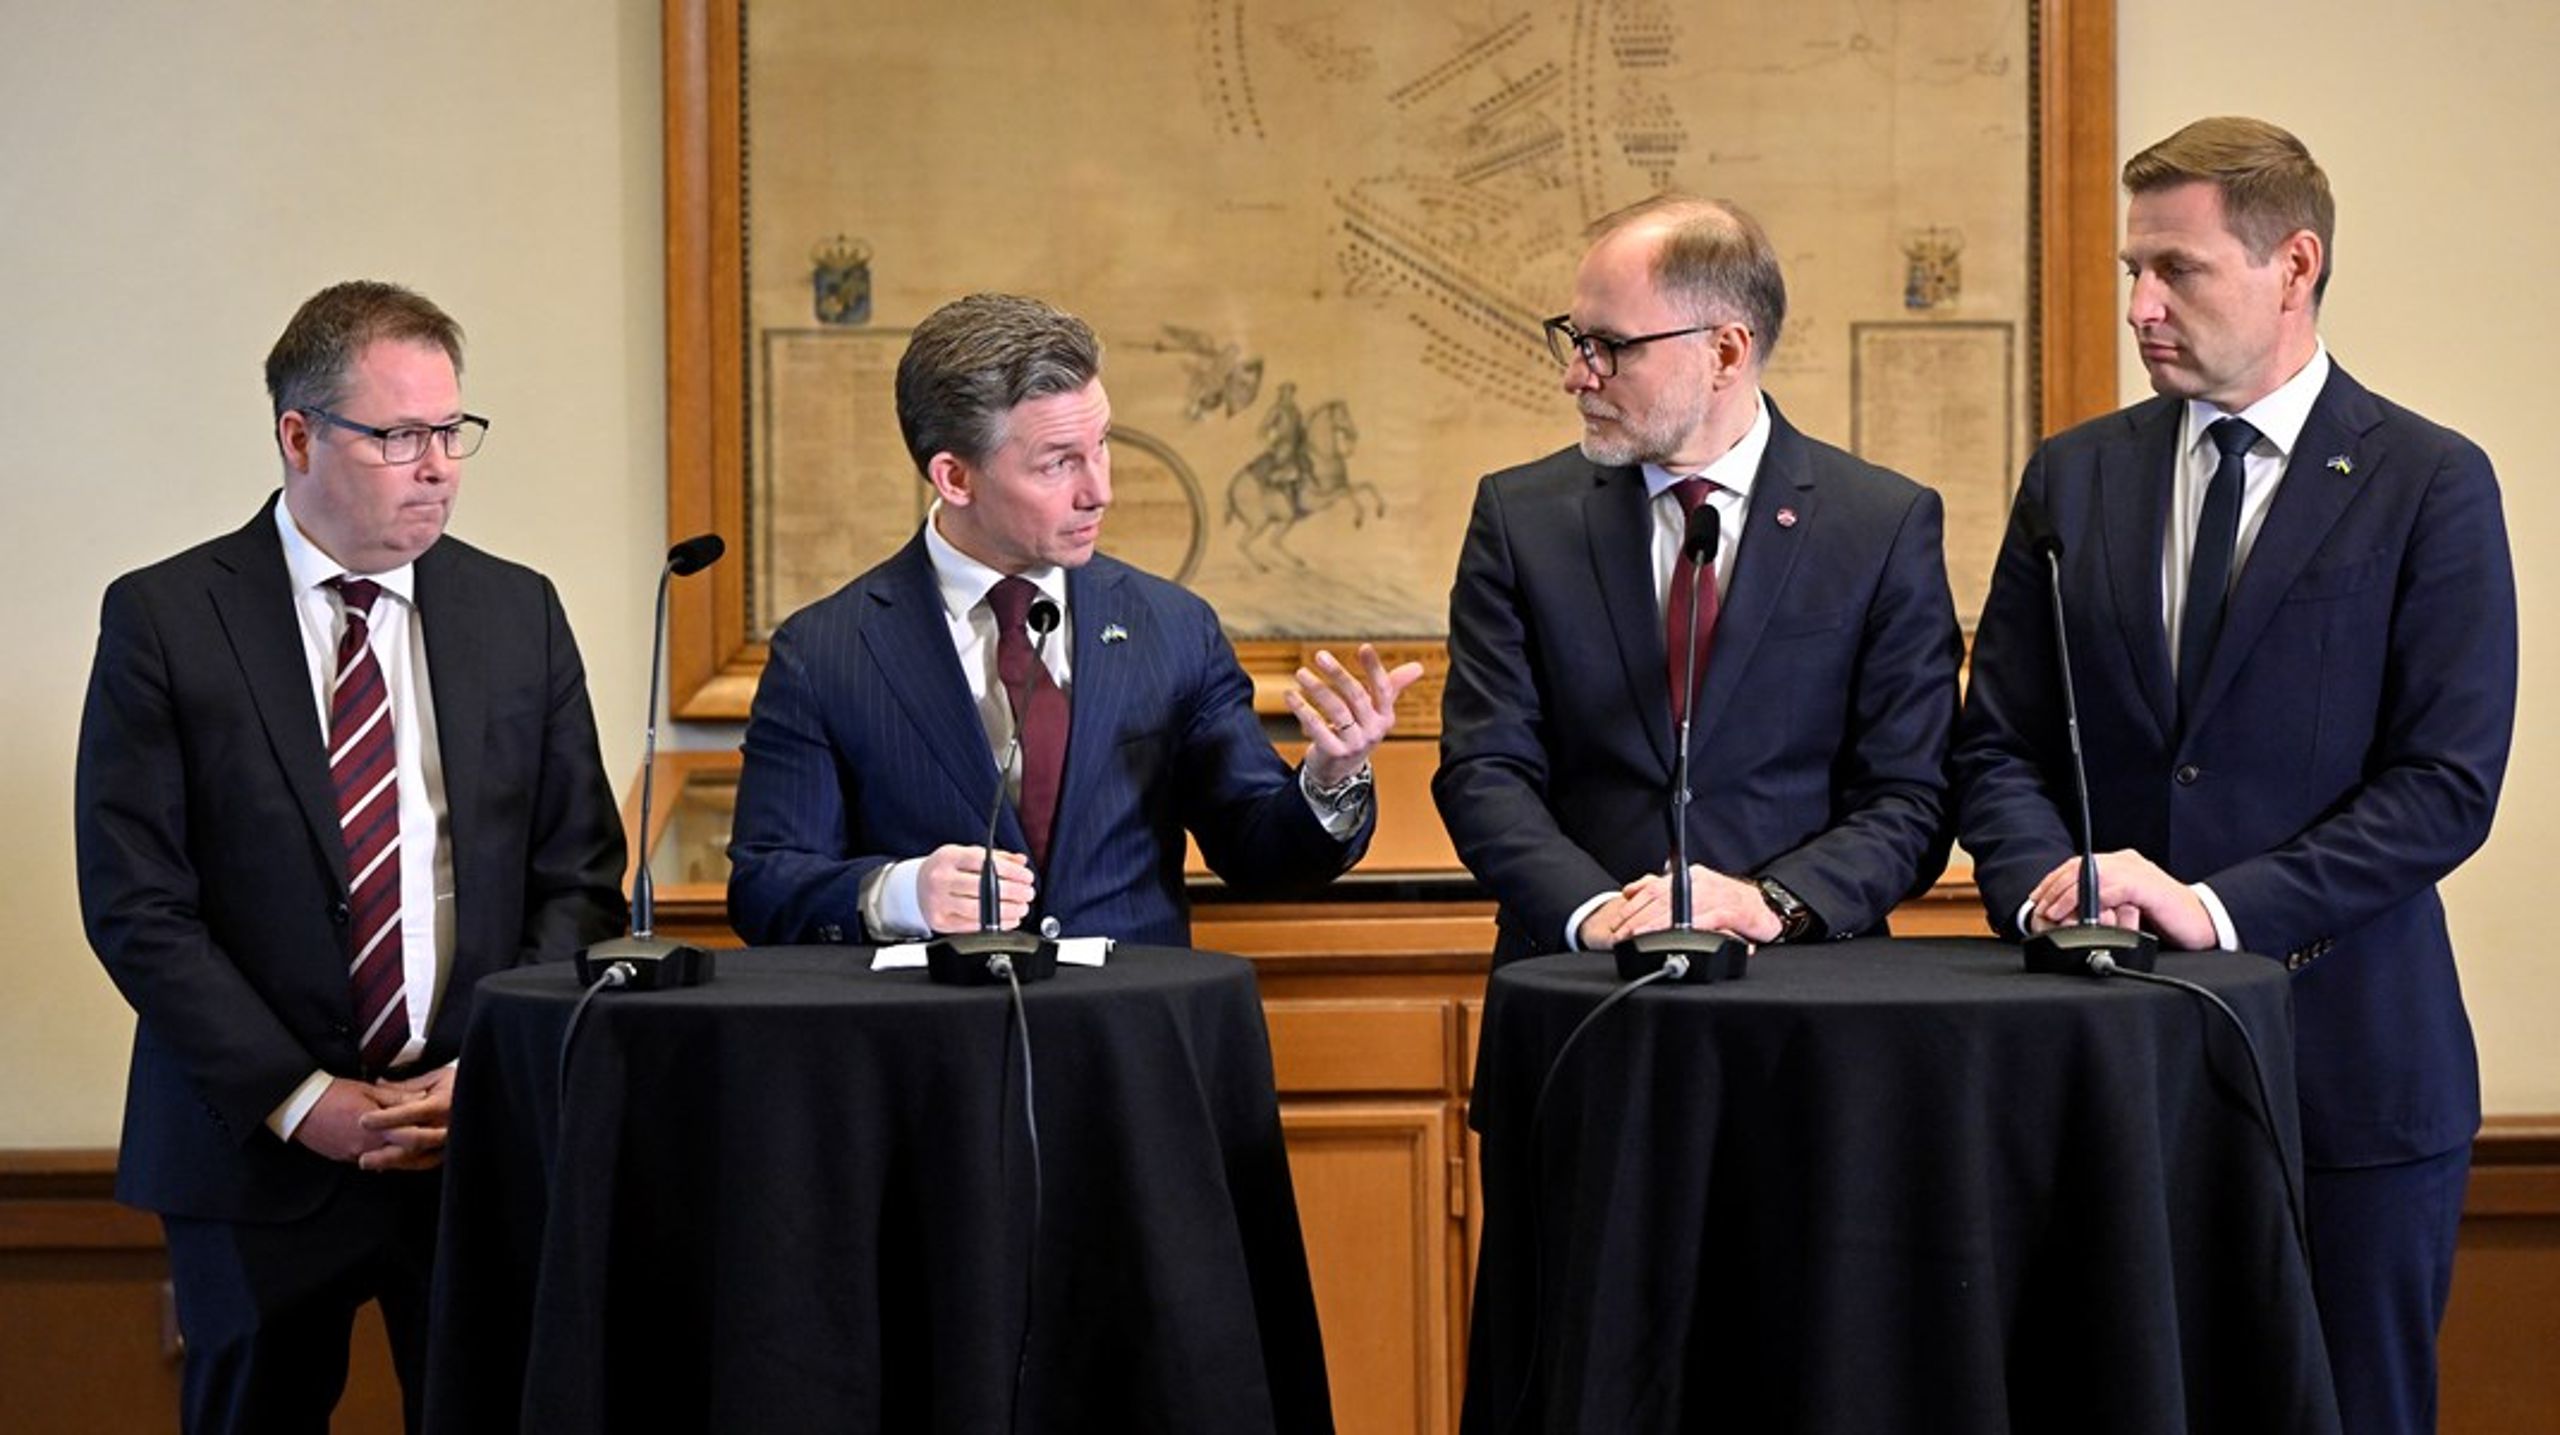 Försvarsministrarna
från Norden och Baltikum träffades för ett tvådagarsmöte&nbsp;i Stockholm. Från
vänster: Bjørn Arild Gram (Norge), Pål Jonson (Sverige), Andris Sprūds
(Lettland) och Hanno Pevkur (Estland).